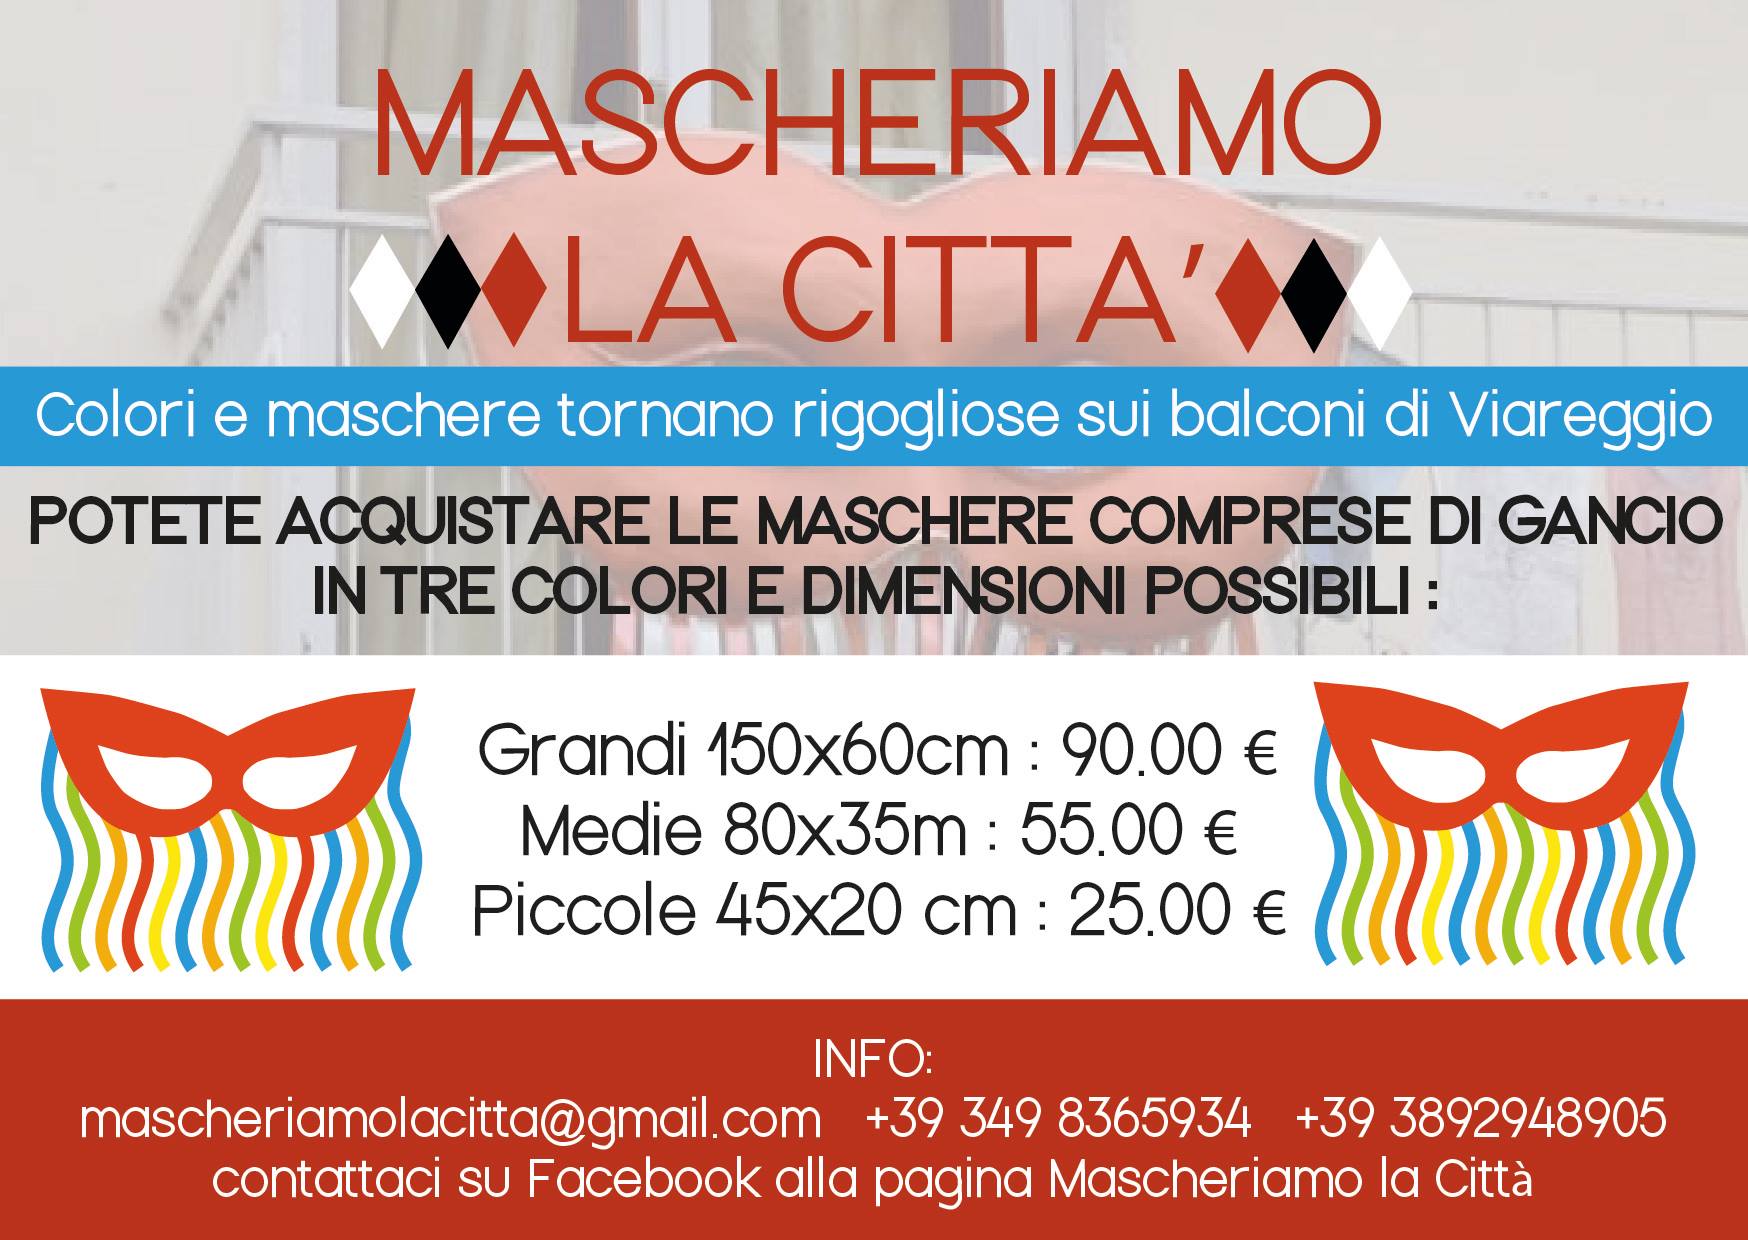 “Mascheriamo la città”, l’idea di Silvano Bianchi e Matteo Raciti per ridare vita a Viareggio